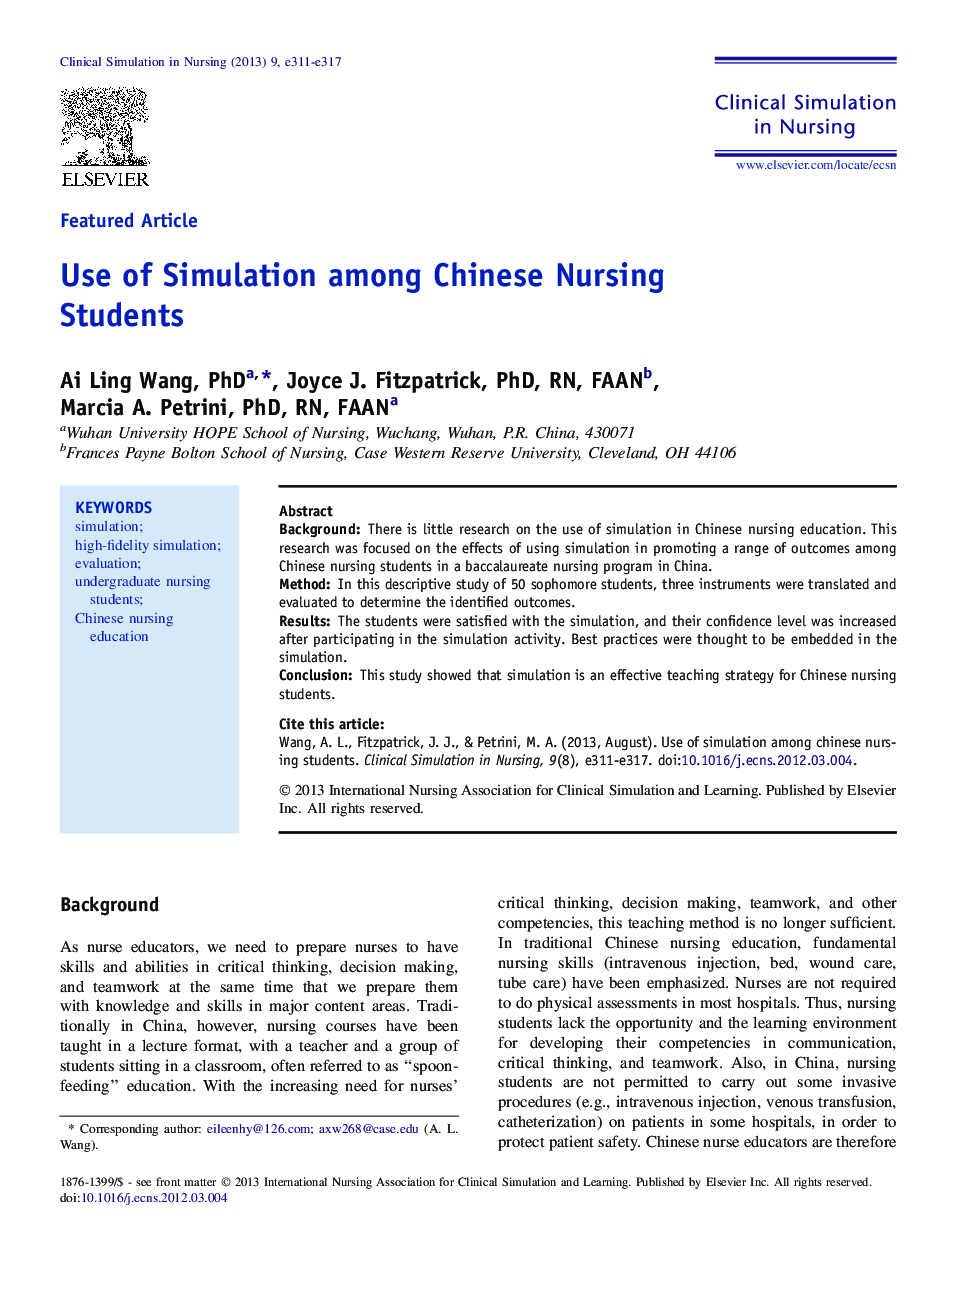 Use of Simulation among Chinese Nursing Students